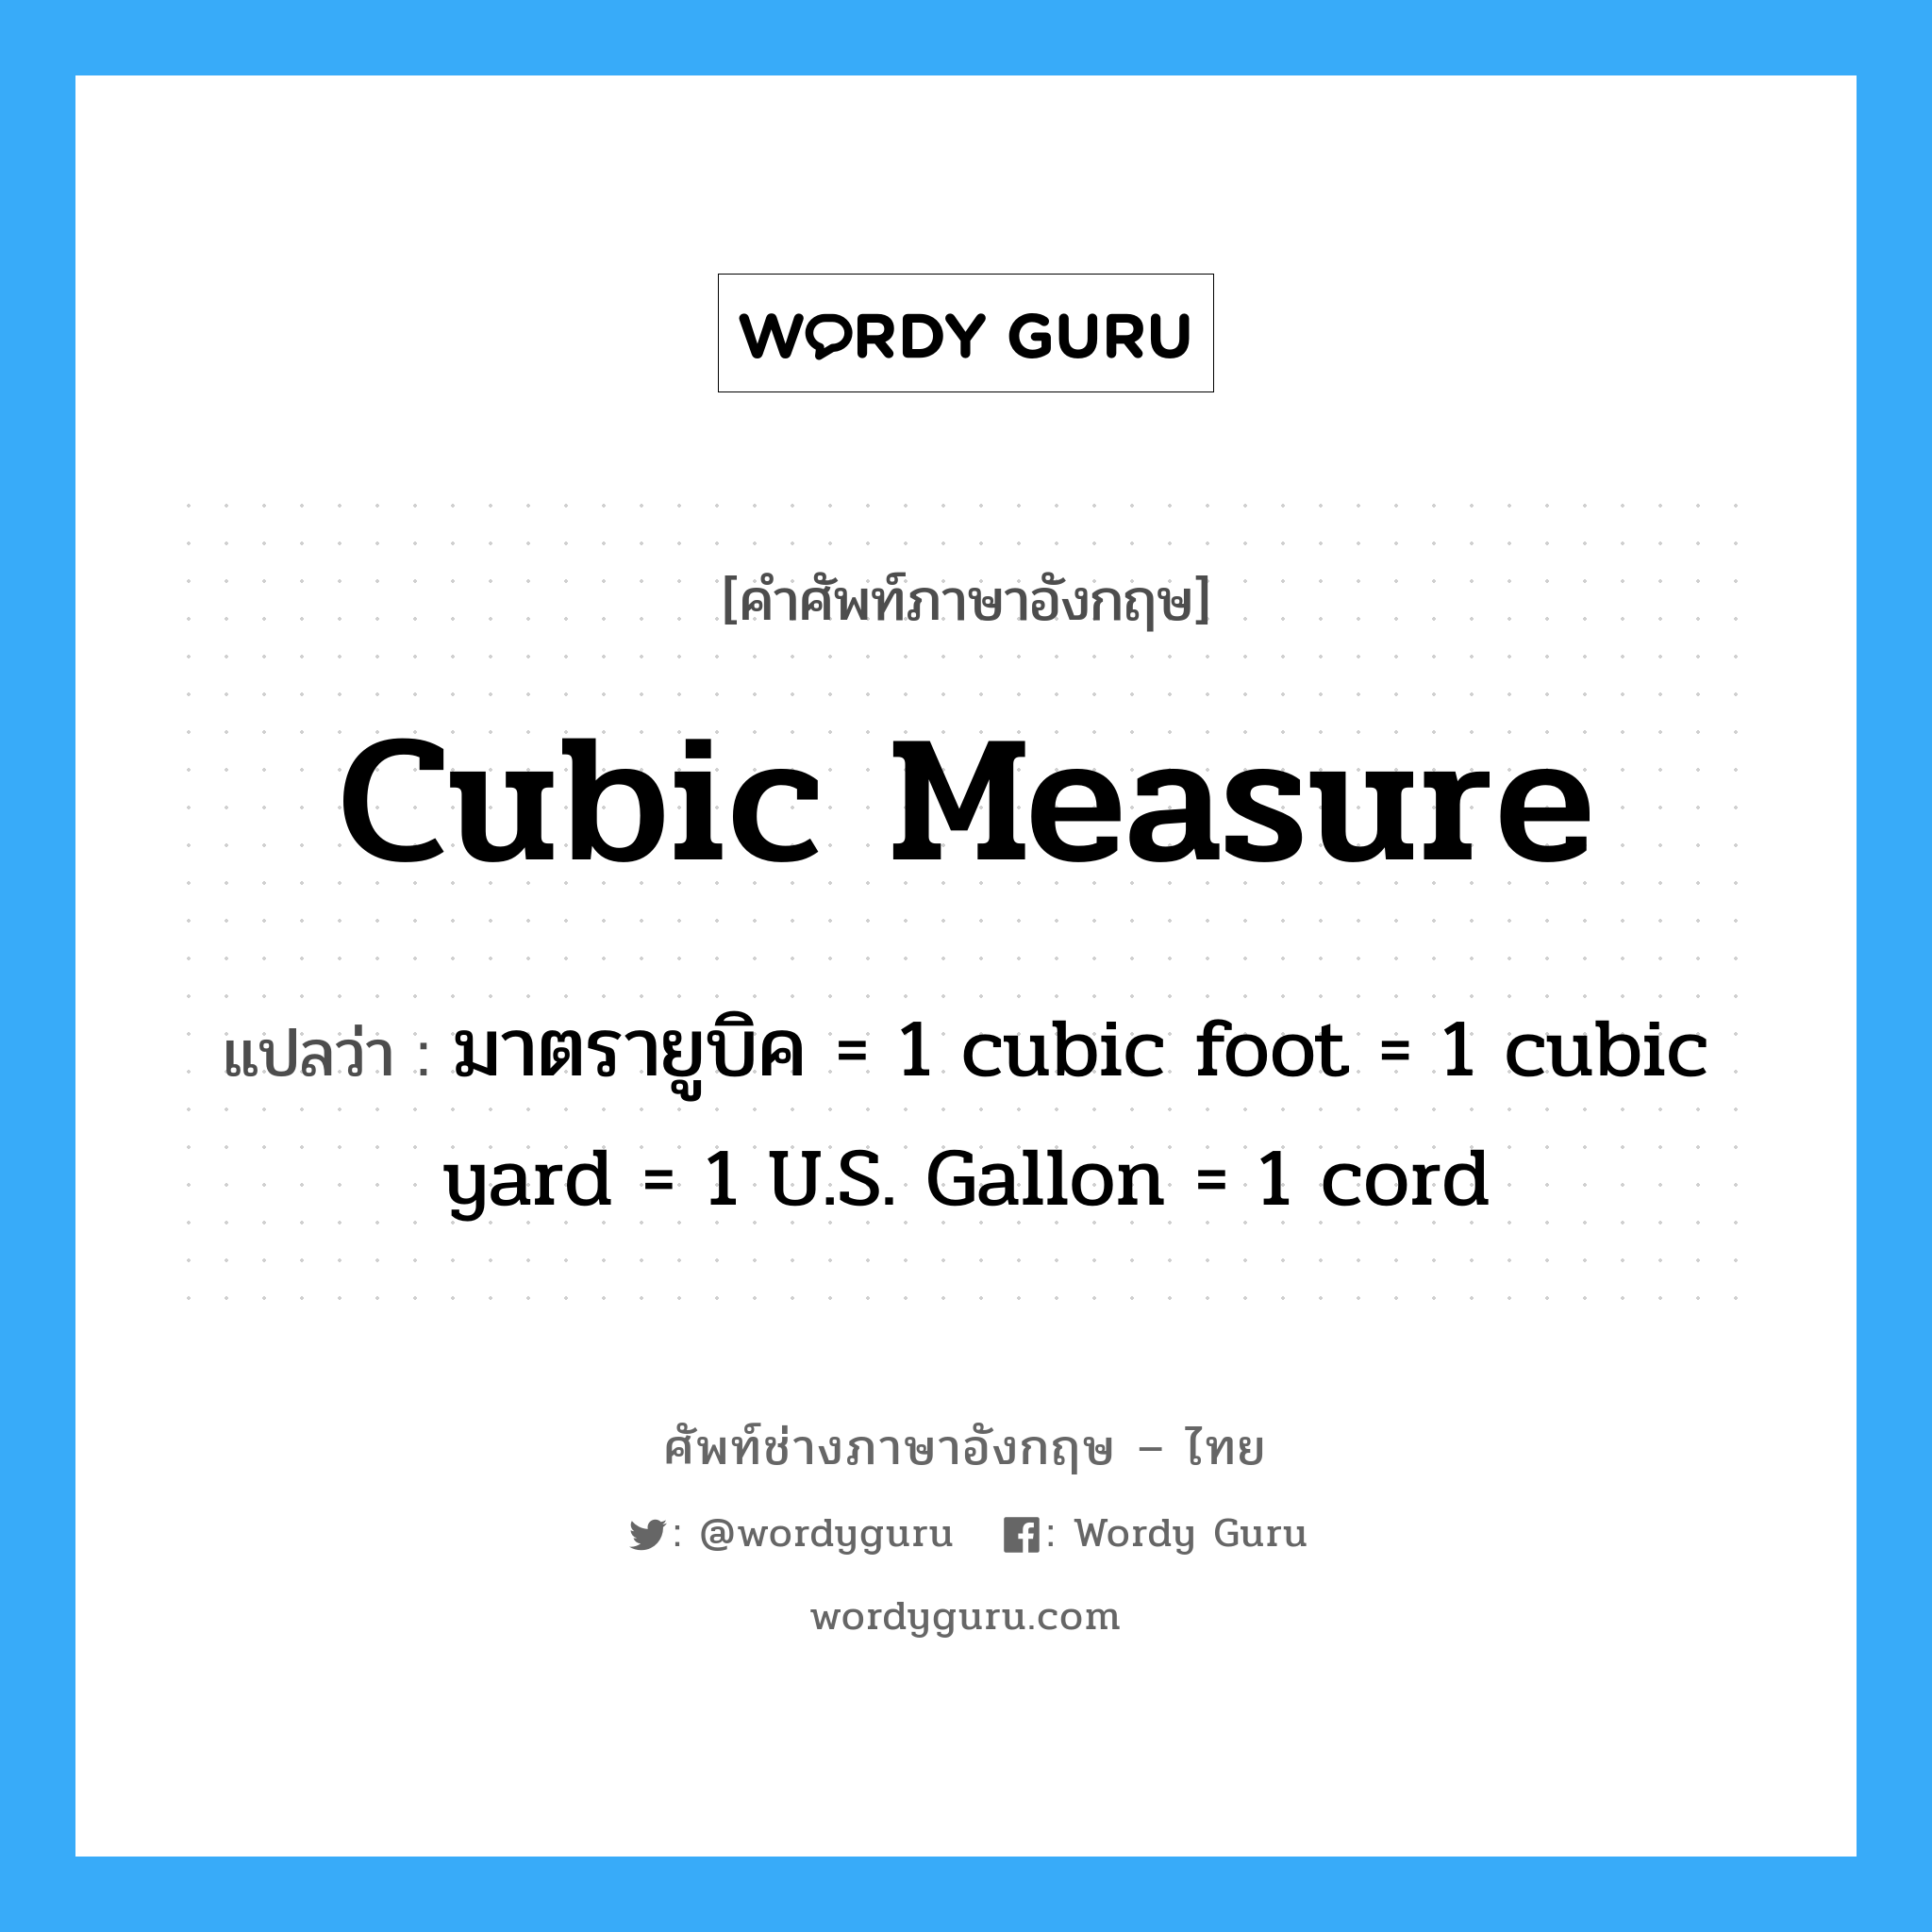 มาตรายูบิค = 1 cubic foot = 1 cubic yard = 1 U.S. Gallon = 1 cord ภาษาอังกฤษ?, คำศัพท์ช่างภาษาอังกฤษ - ไทย มาตรายูบิค = 1 cubic foot = 1 cubic yard = 1 U.S. Gallon = 1 cord คำศัพท์ภาษาอังกฤษ มาตรายูบิค = 1 cubic foot = 1 cubic yard = 1 U.S. Gallon = 1 cord แปลว่า cubic measure